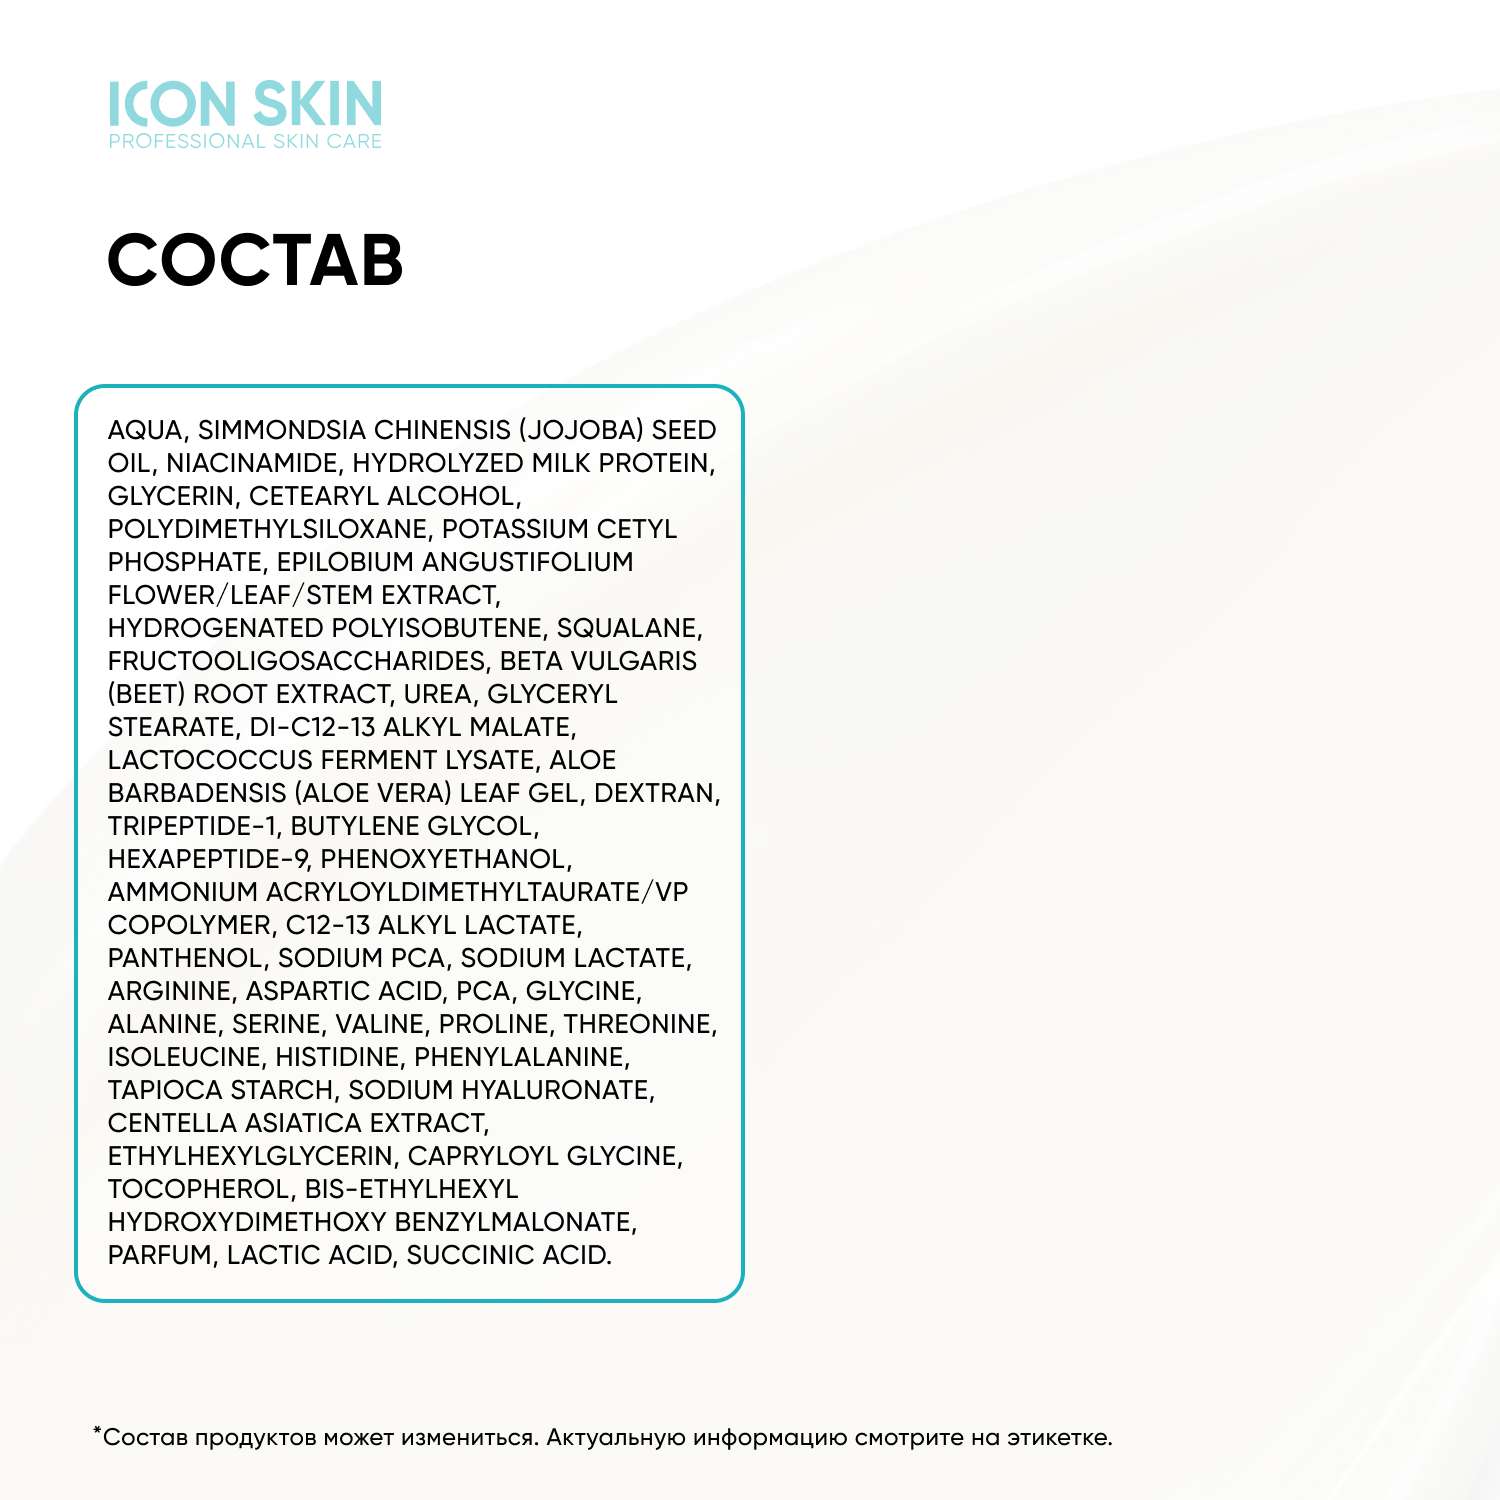 Крем ICON SKIN Aqua Essence увлажняющий с пептидами и гиалуроновой кислотой - фото 7